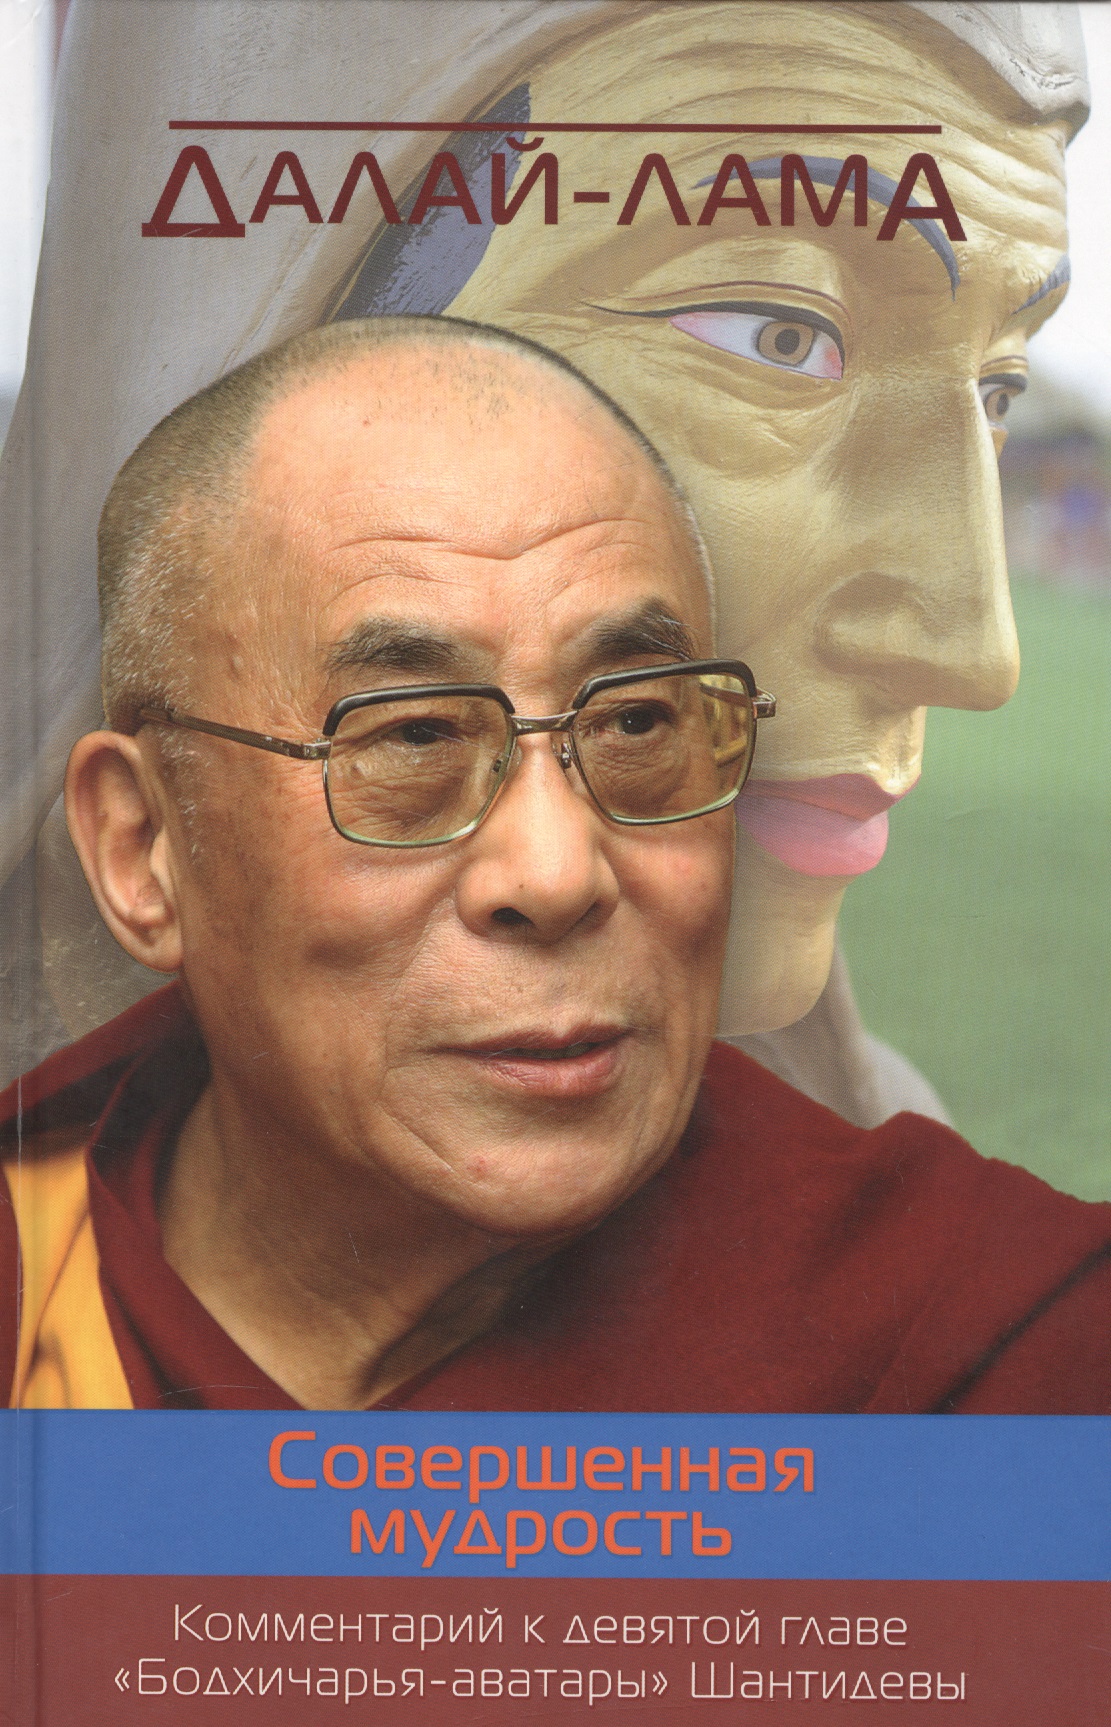 Жиронкина Ю., Далай-лама XIV Совершенная мудрость. Комментарий к девятой главе «Бодхичарья-аватары» Шантидевы цена и фото